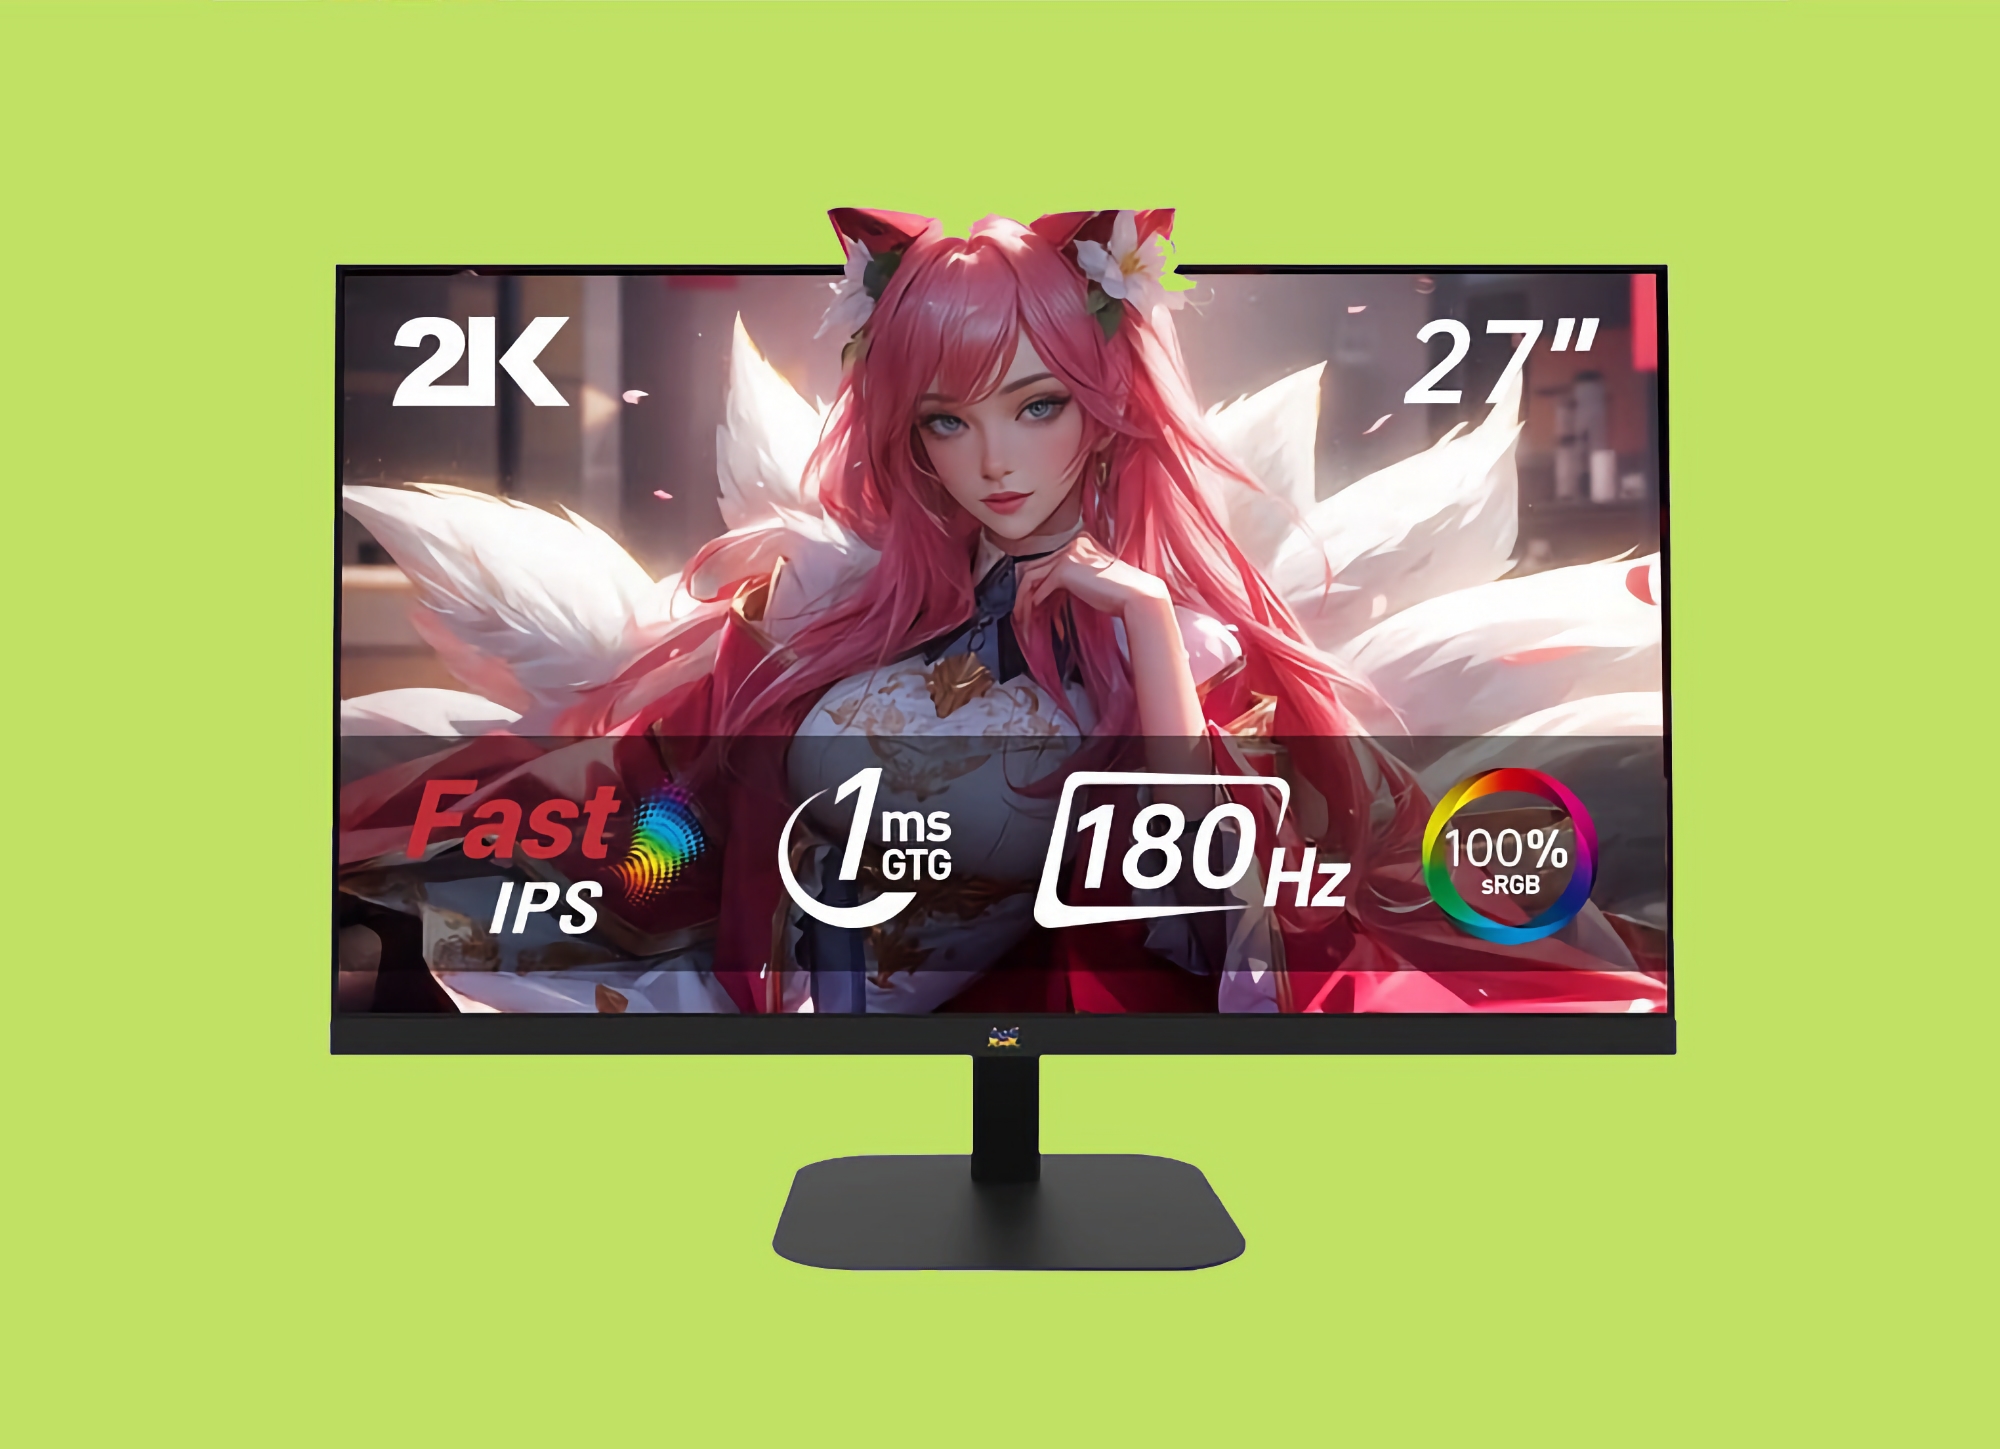 ViewSonic zaprezentował VX2757-2K-PRO: 27-calowy monitor o rozdzielczości 2K i częstotliwości odświeżania 180 Hz za 123 USD.